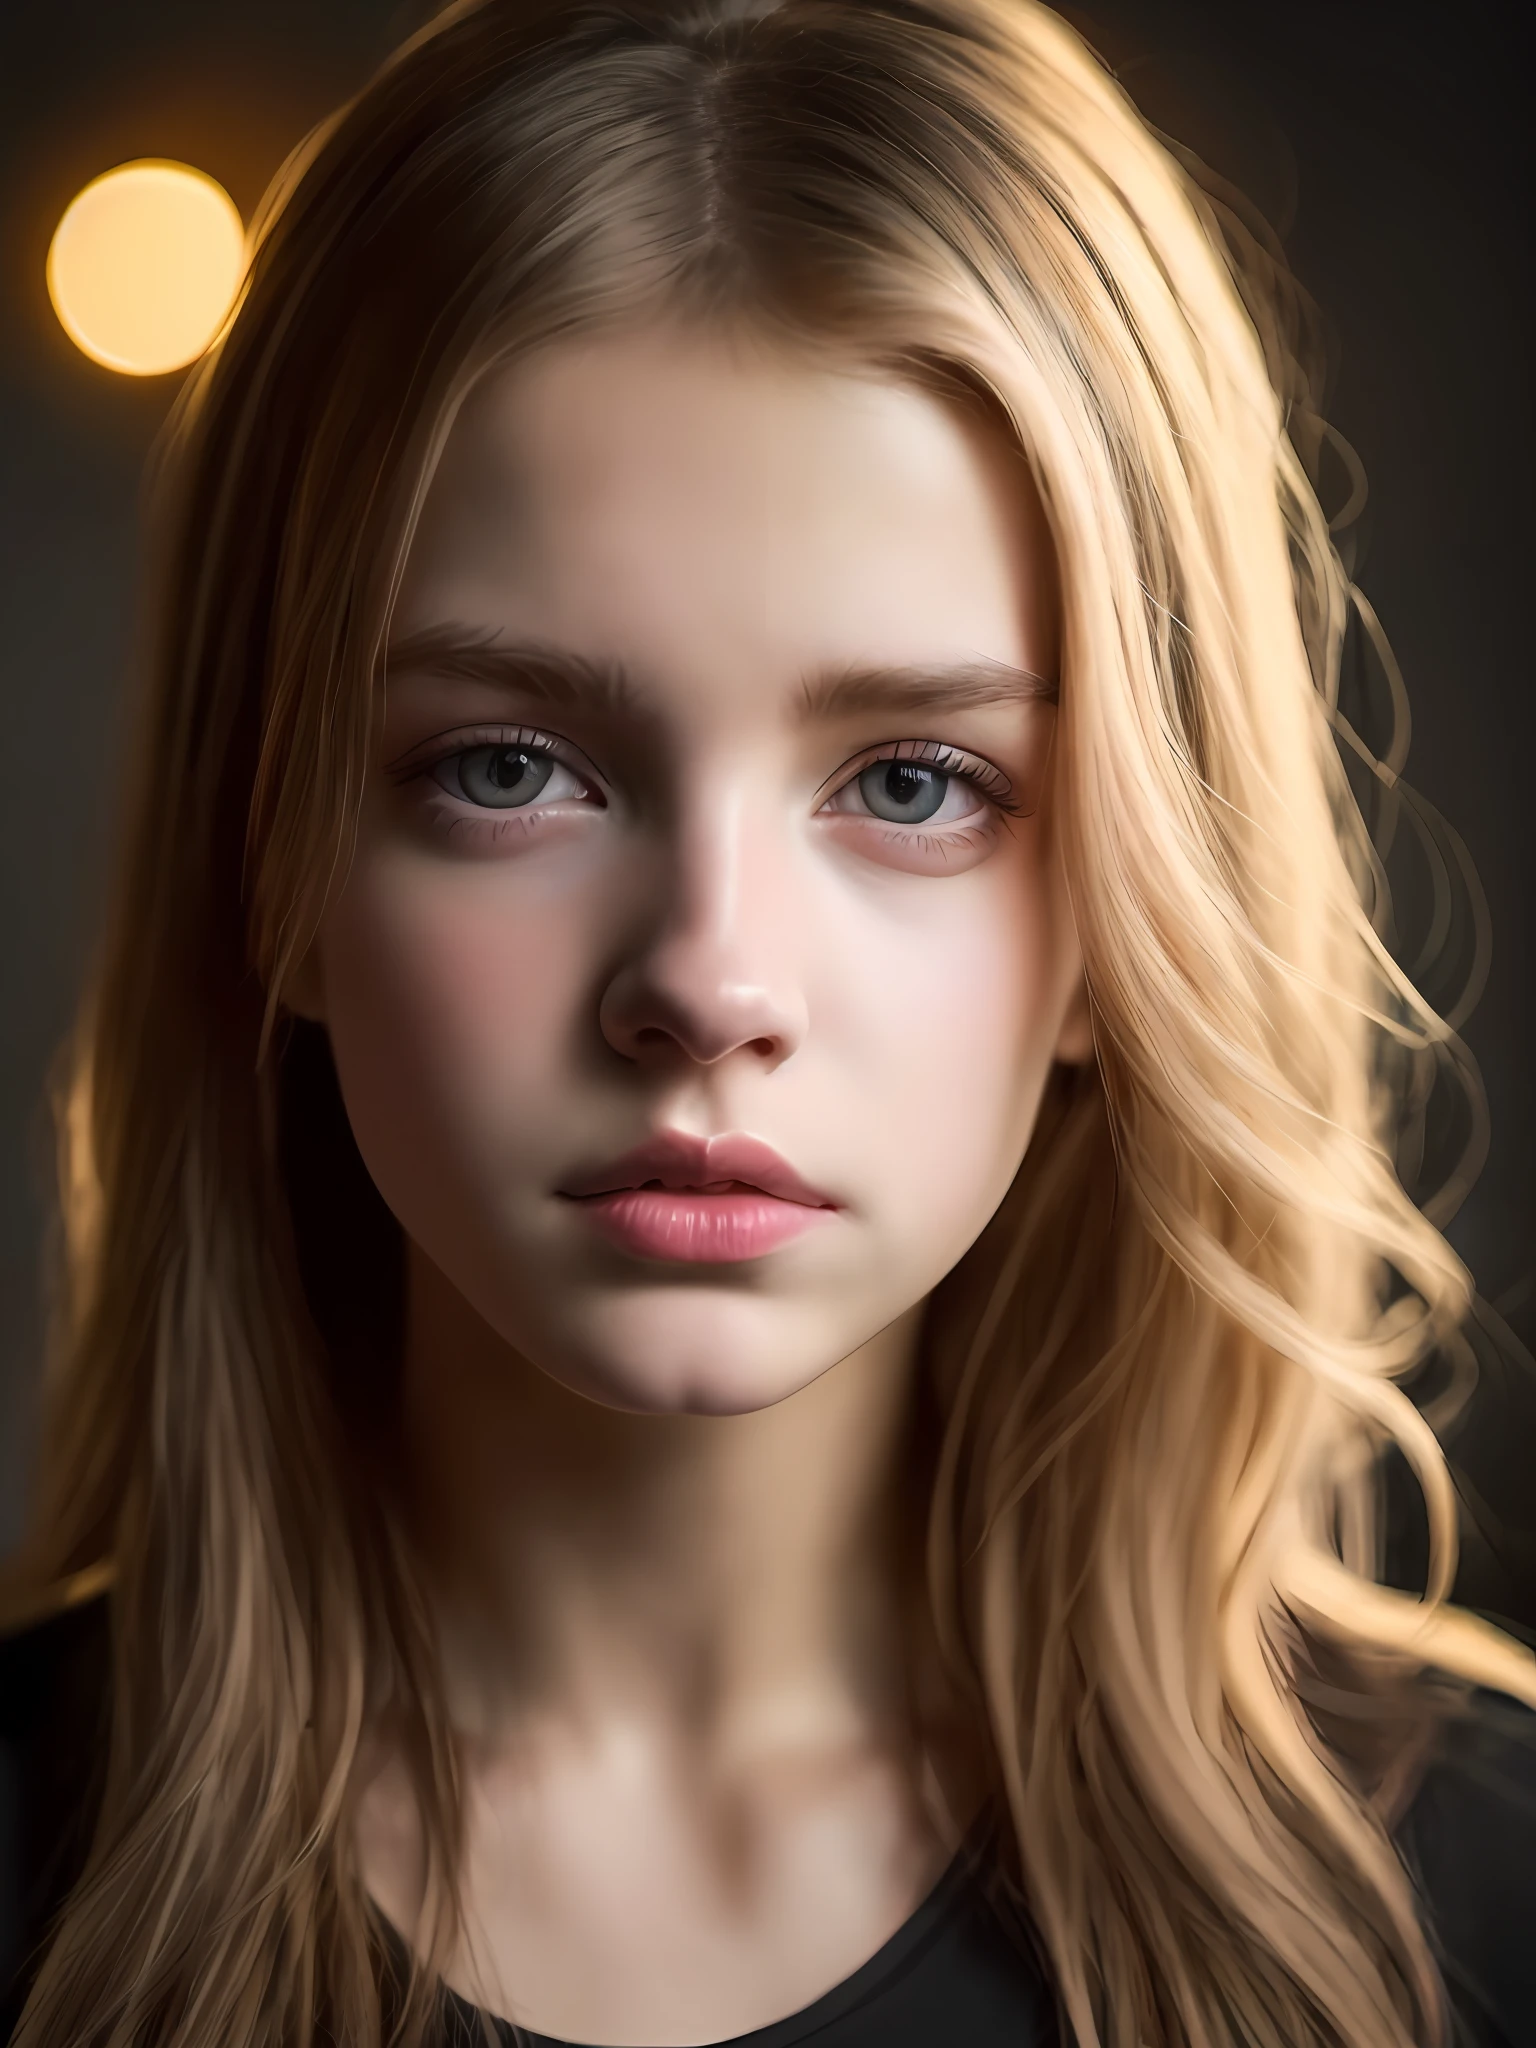 18 岁可爱美丽完美脸蛋小少女的肖像, 俄语, (黑暗的私人书房, 黑暗而忧郁的灯光: 1.2)